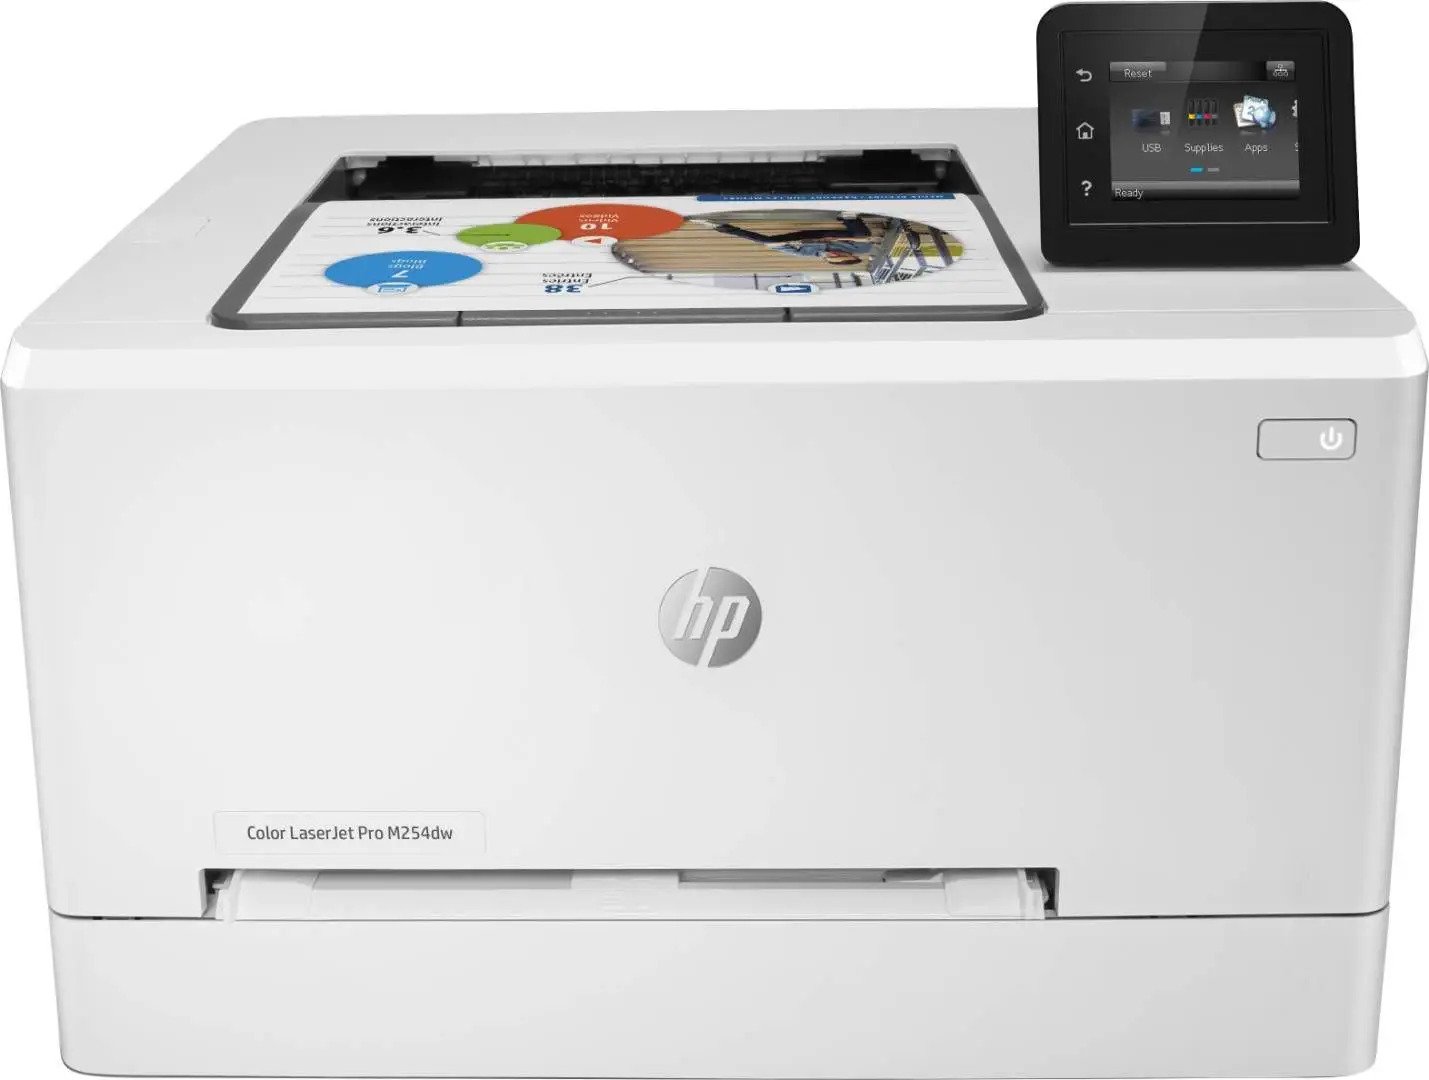 Náplně do tiskárny HP Color LaserJet Pro M254dw